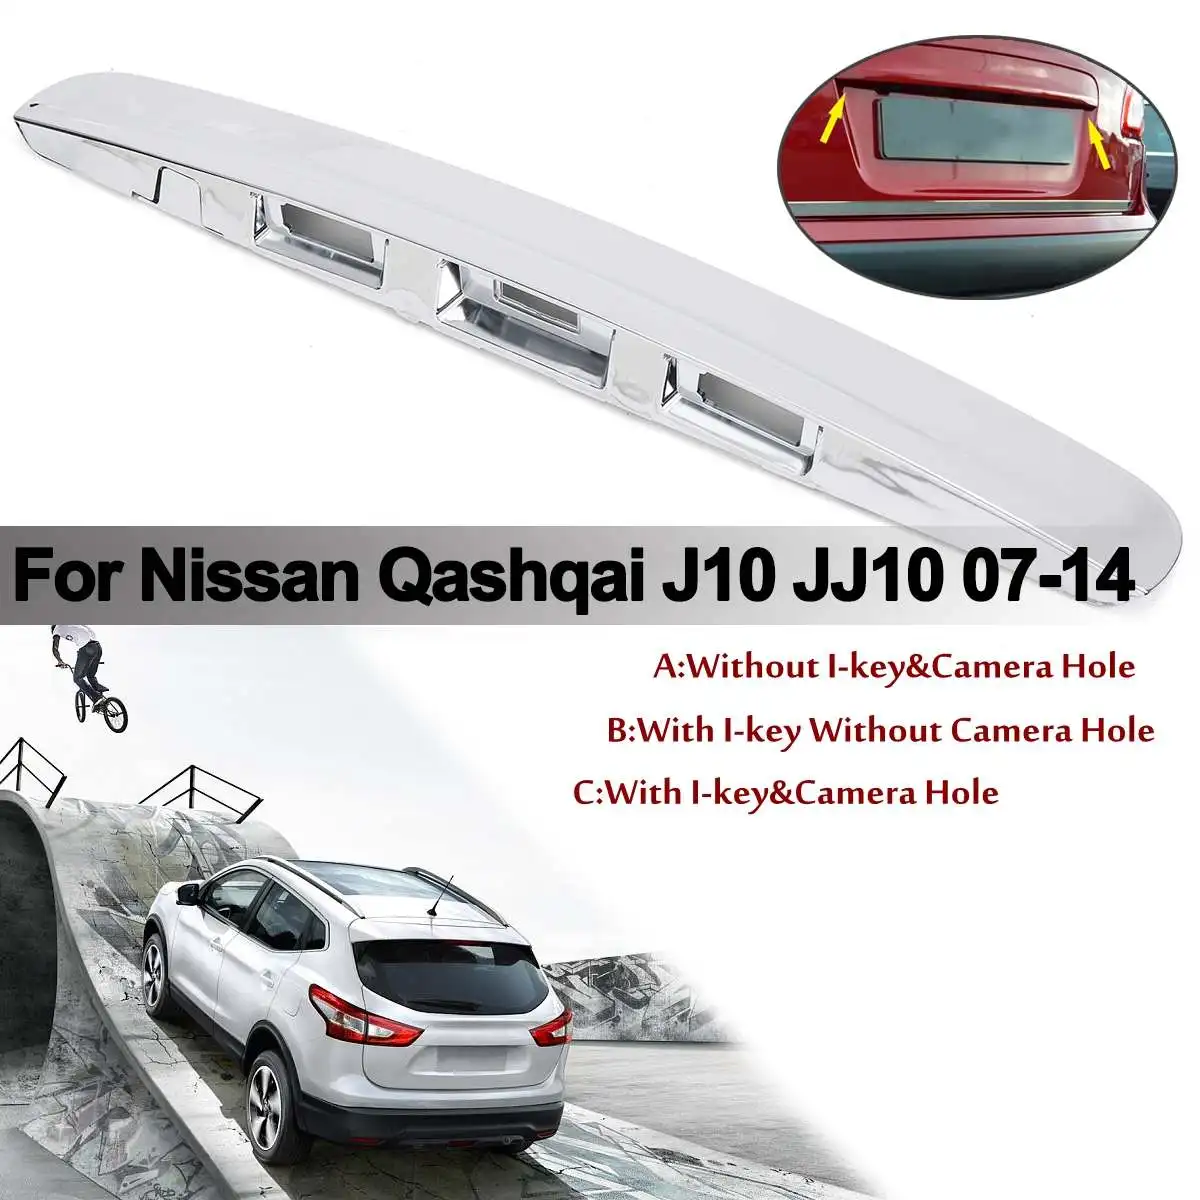 Новинка, 3 типа, серебряная крышка багажника с ручкой/без I-key& отверстие для камеры для Nissan Qashqai J10 20072014, пластиковая накладка